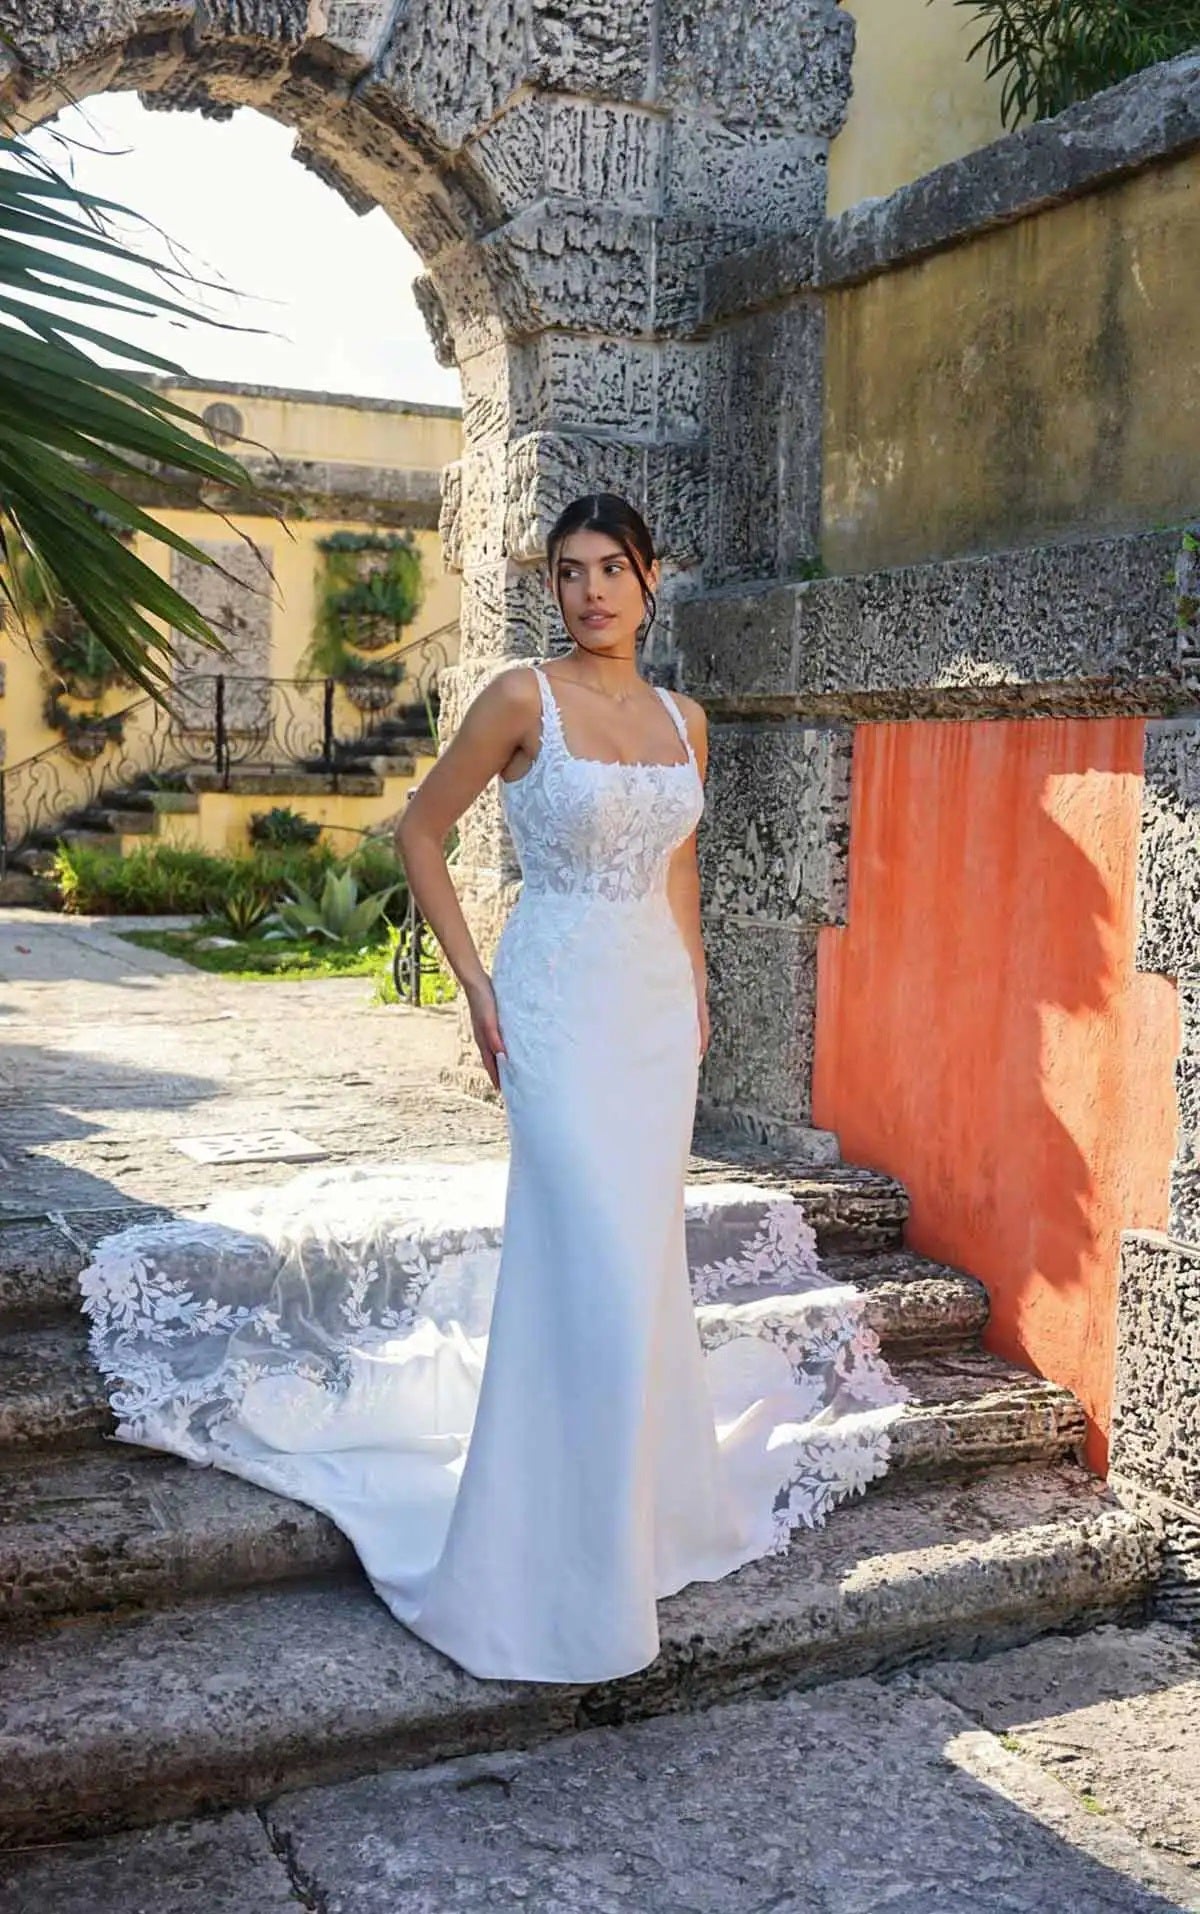 8256 Modest A-Line Lace Bridal Gown -